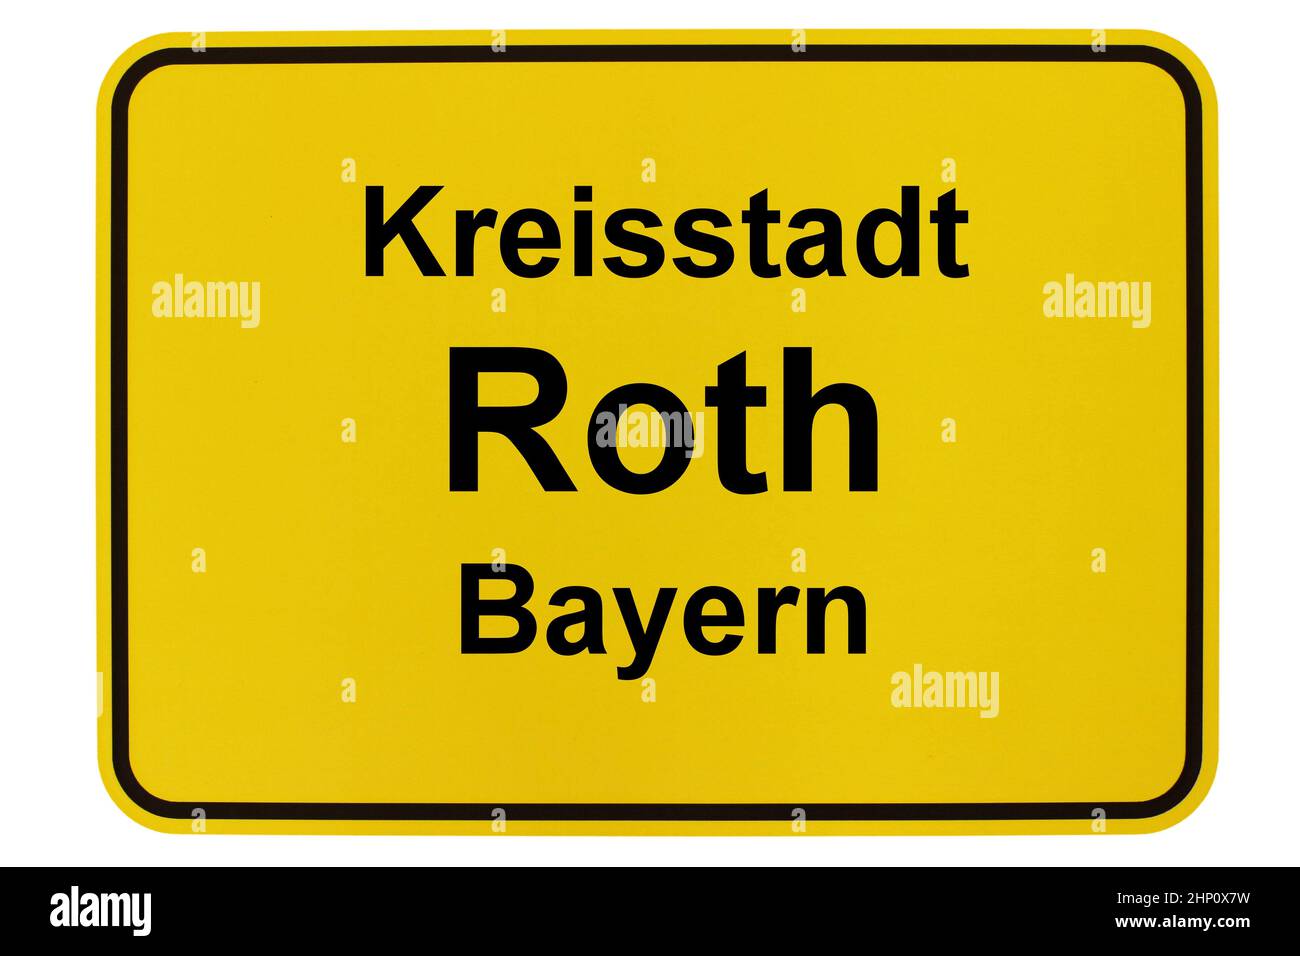 Impressionen aus der Stadt Roth in Bayern Stock Photo